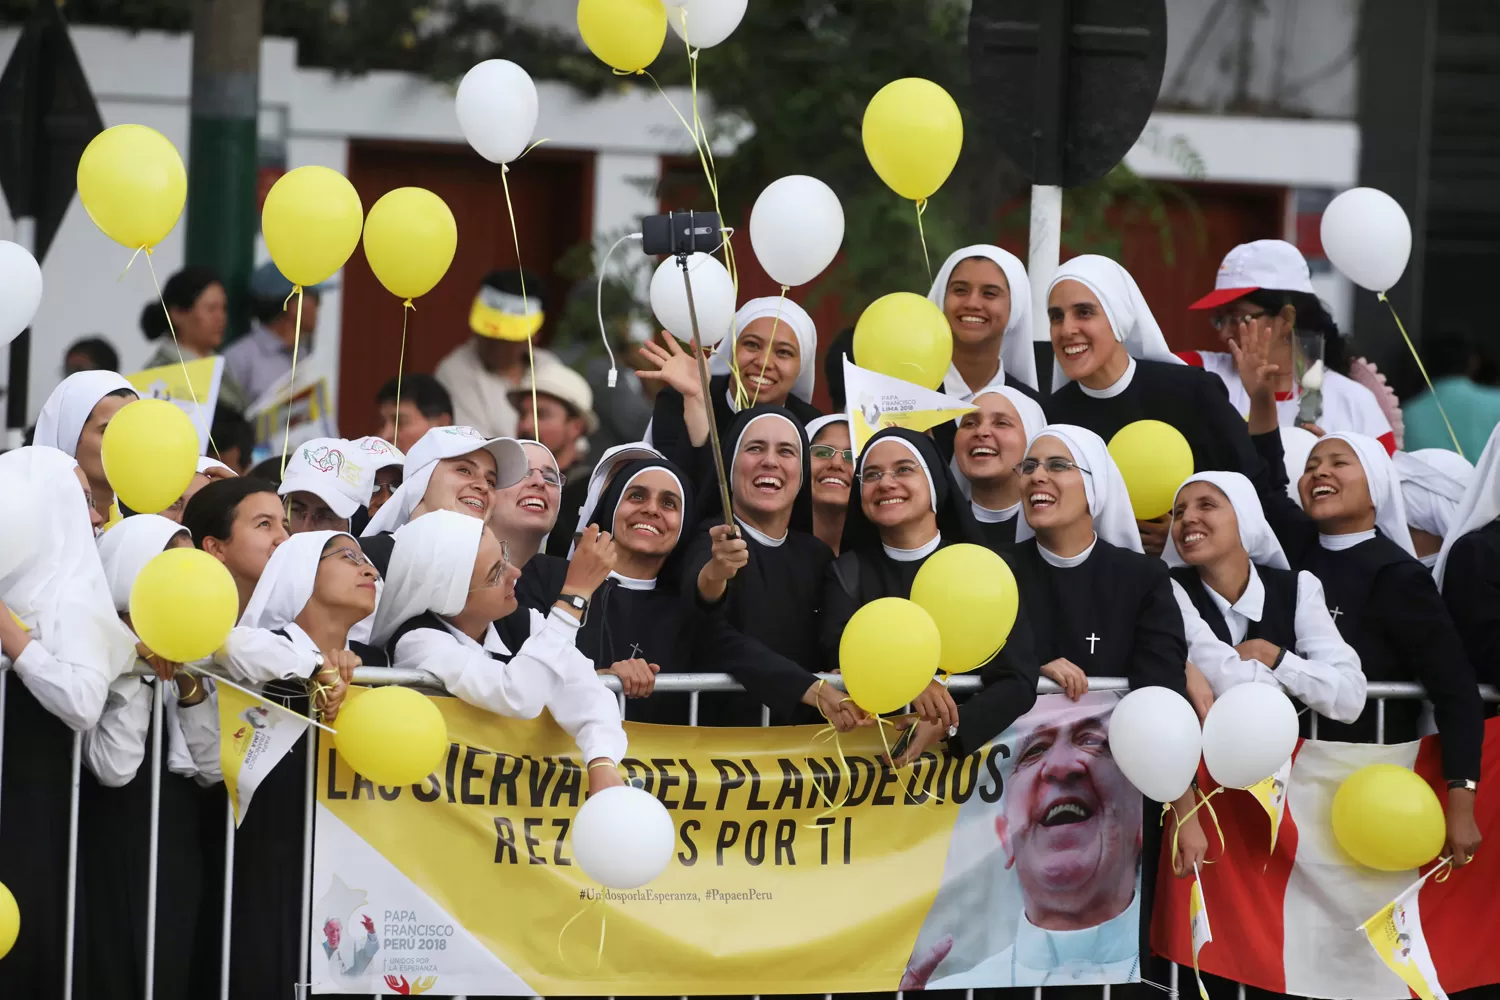 EN LIMA. Los fieles recibieron al Papa con pancartas y globos amarillos. REUTERS